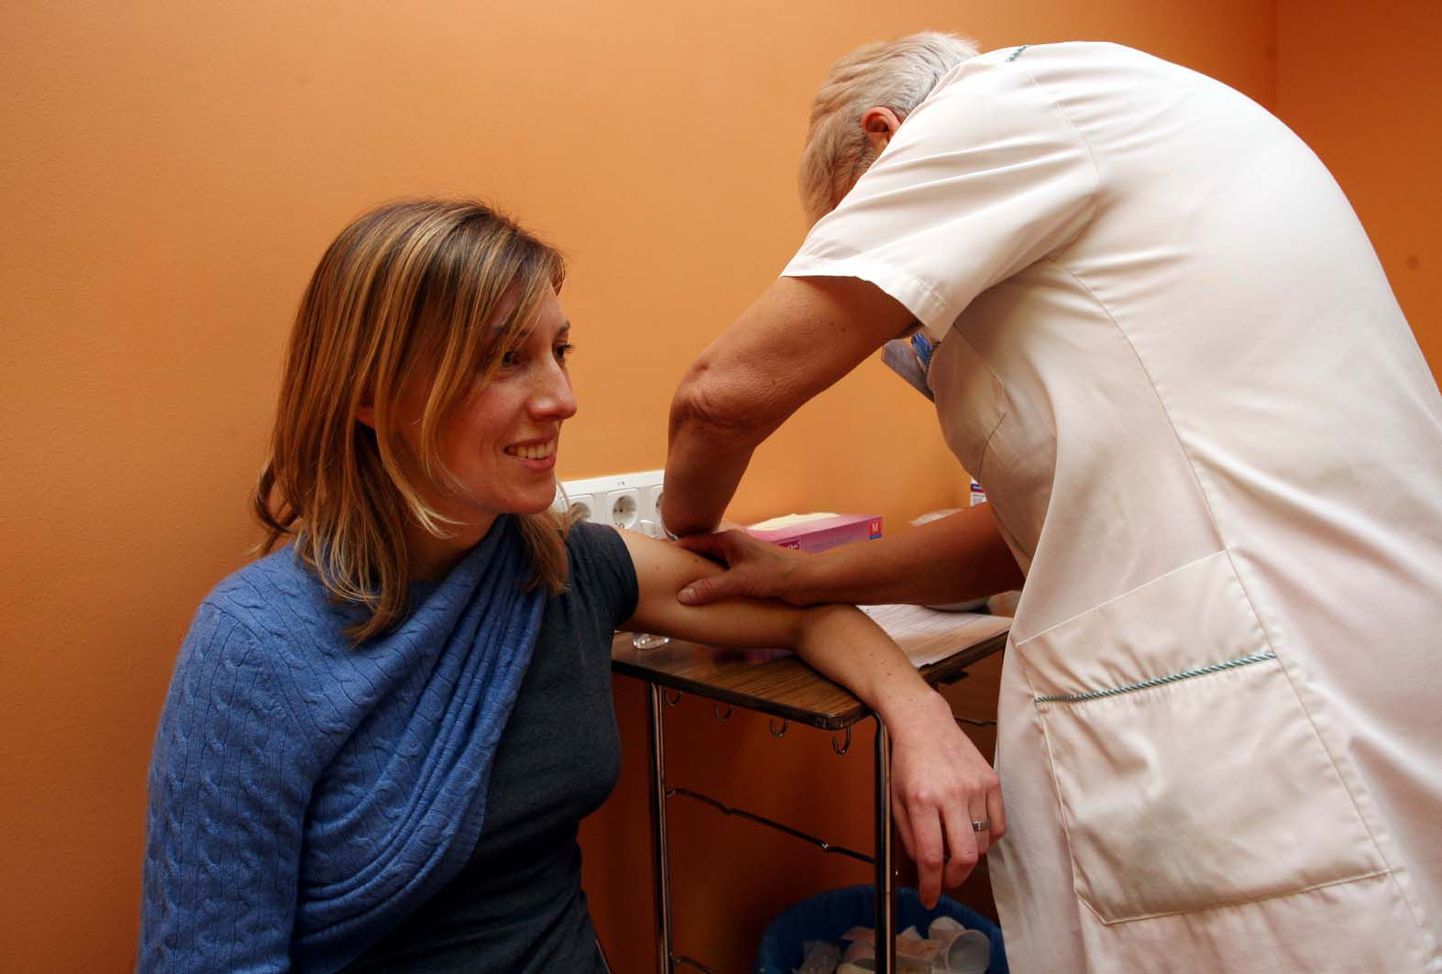 Pildil on Tallinna Keskhaigla naistekliinikus toimunud gripi A (H1N1) vastu vaktsineerimine. Parajasti laseb ennast vaktsineerida Heidi Tuhkanen, kes 4. kuud lapseootel.